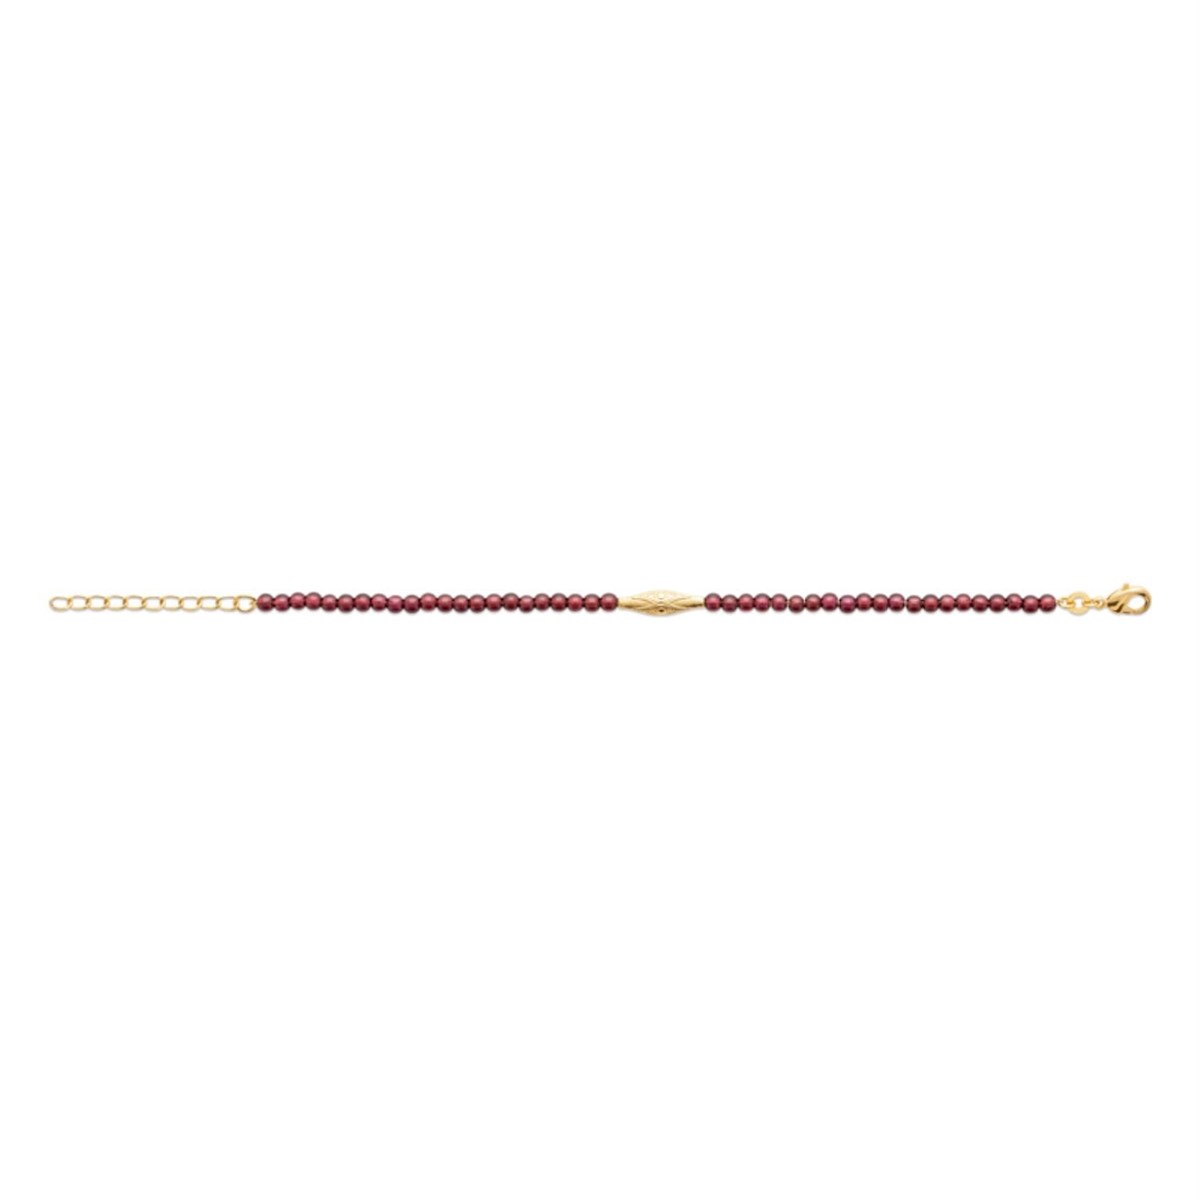 Bracelet suite de perles naturelles grenat symbole géométrique Plaqué OR 750 3 microns - vue 2